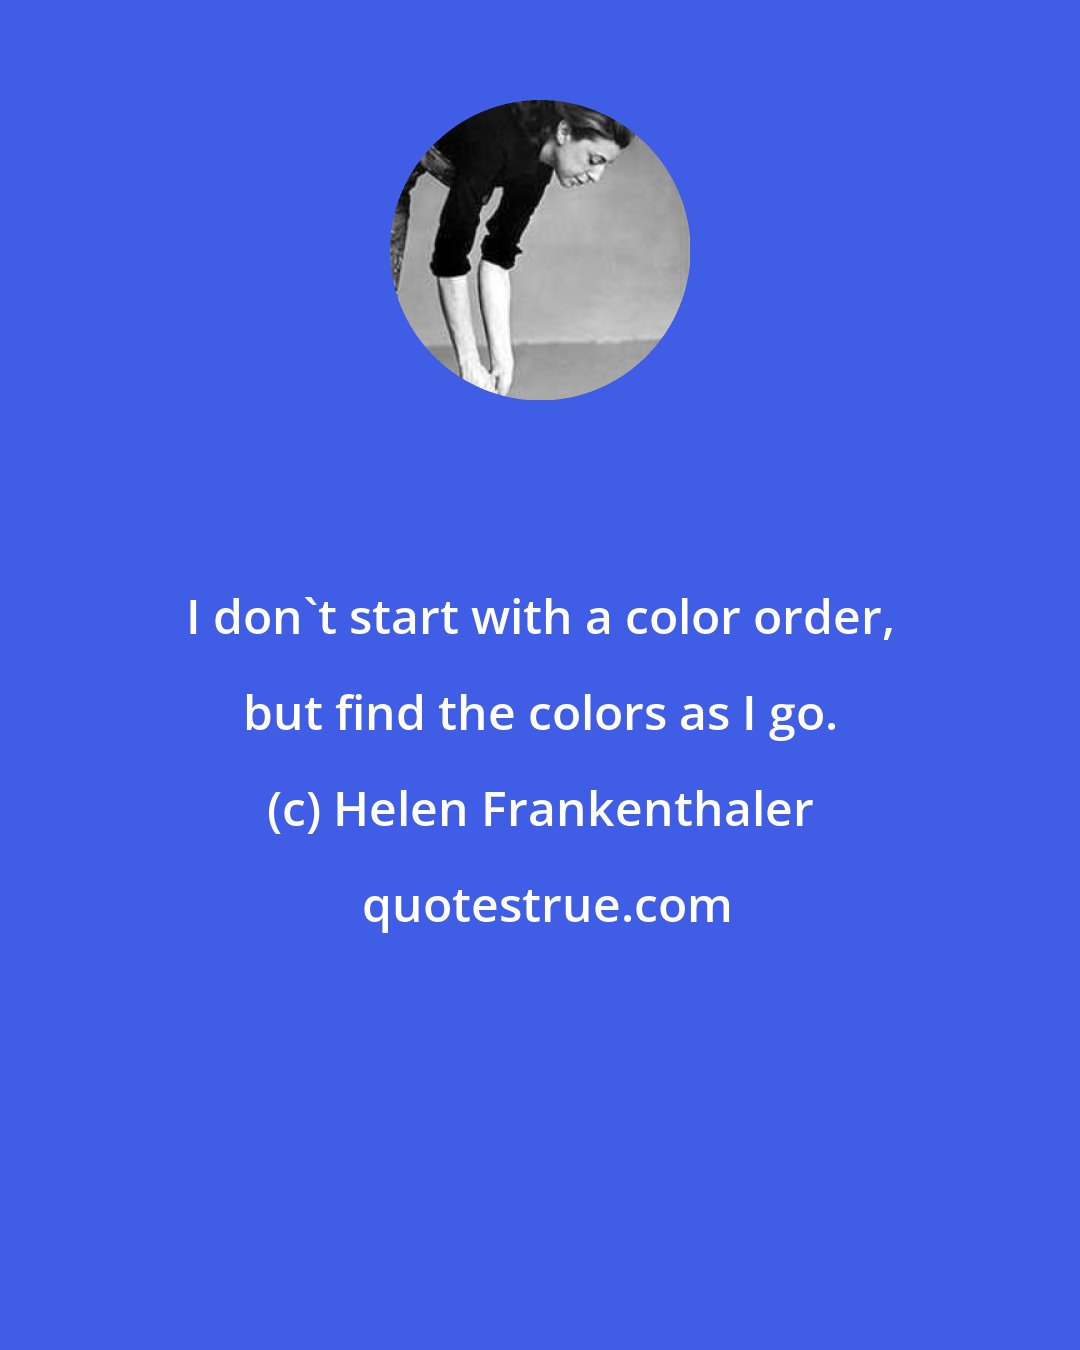 Helen Frankenthaler: I don't start with a color order, but find the colors as I go.